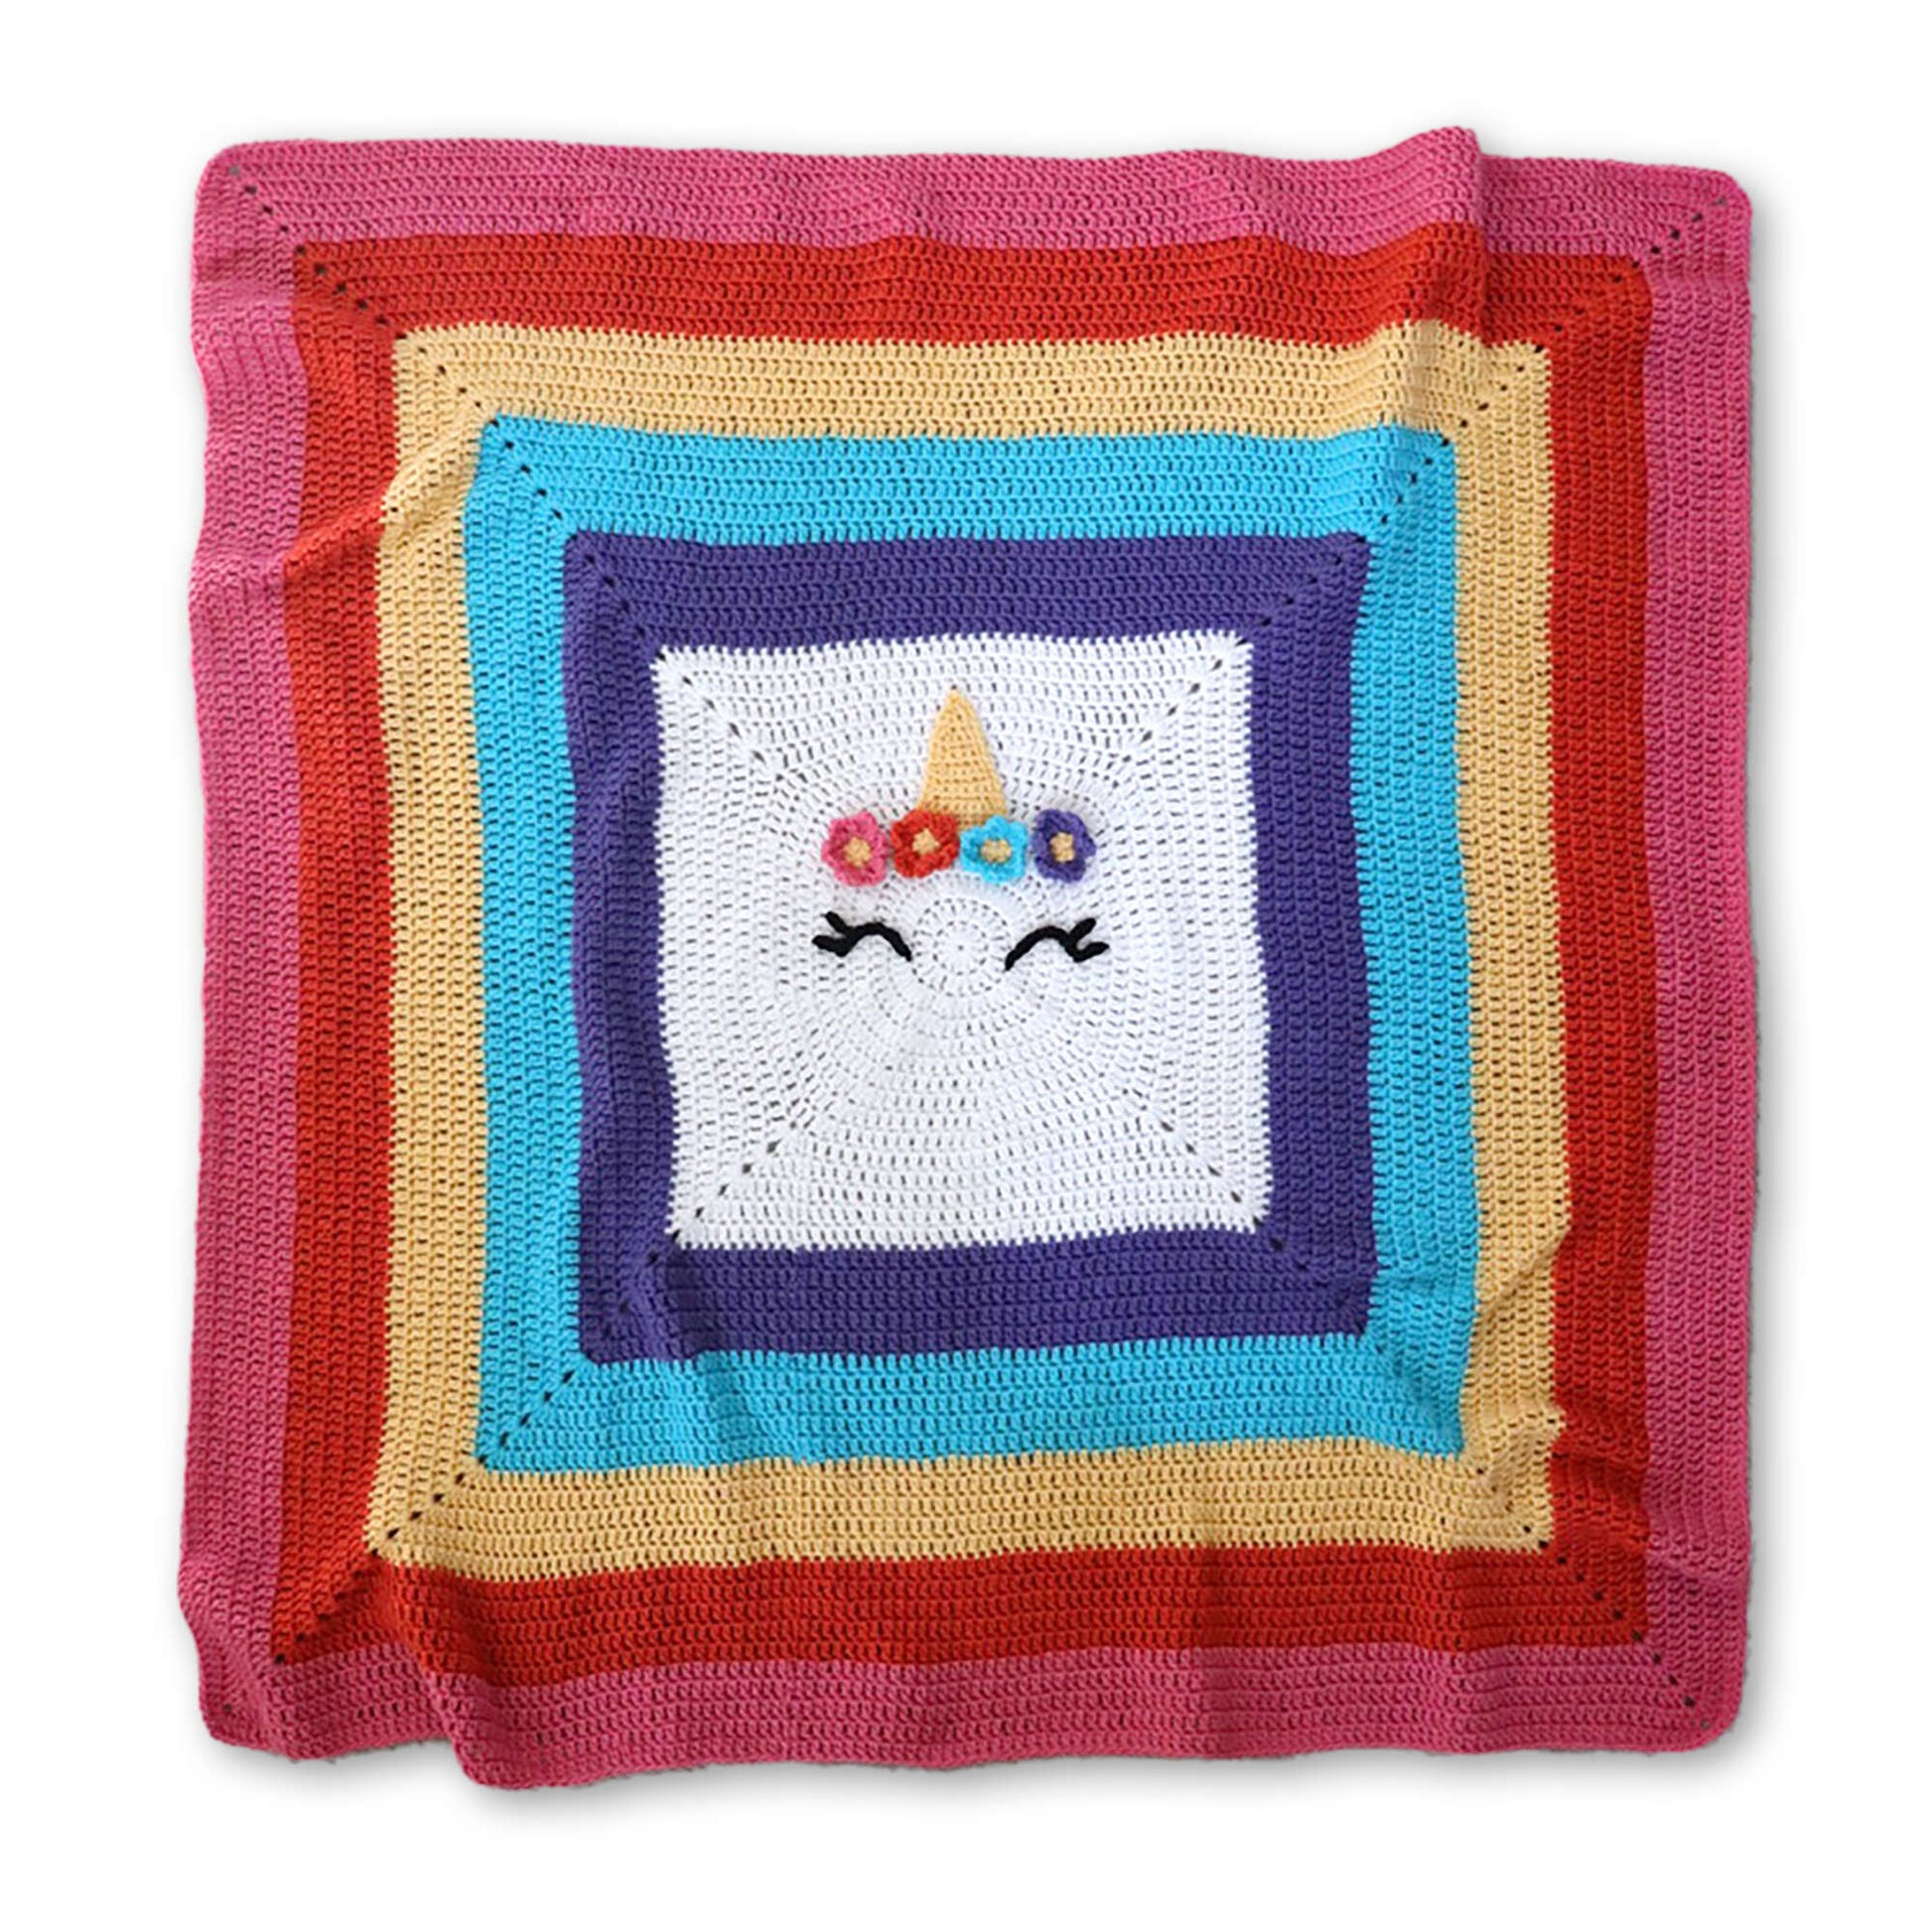 Red Heart Crochet Unicorn Blanket Single Size